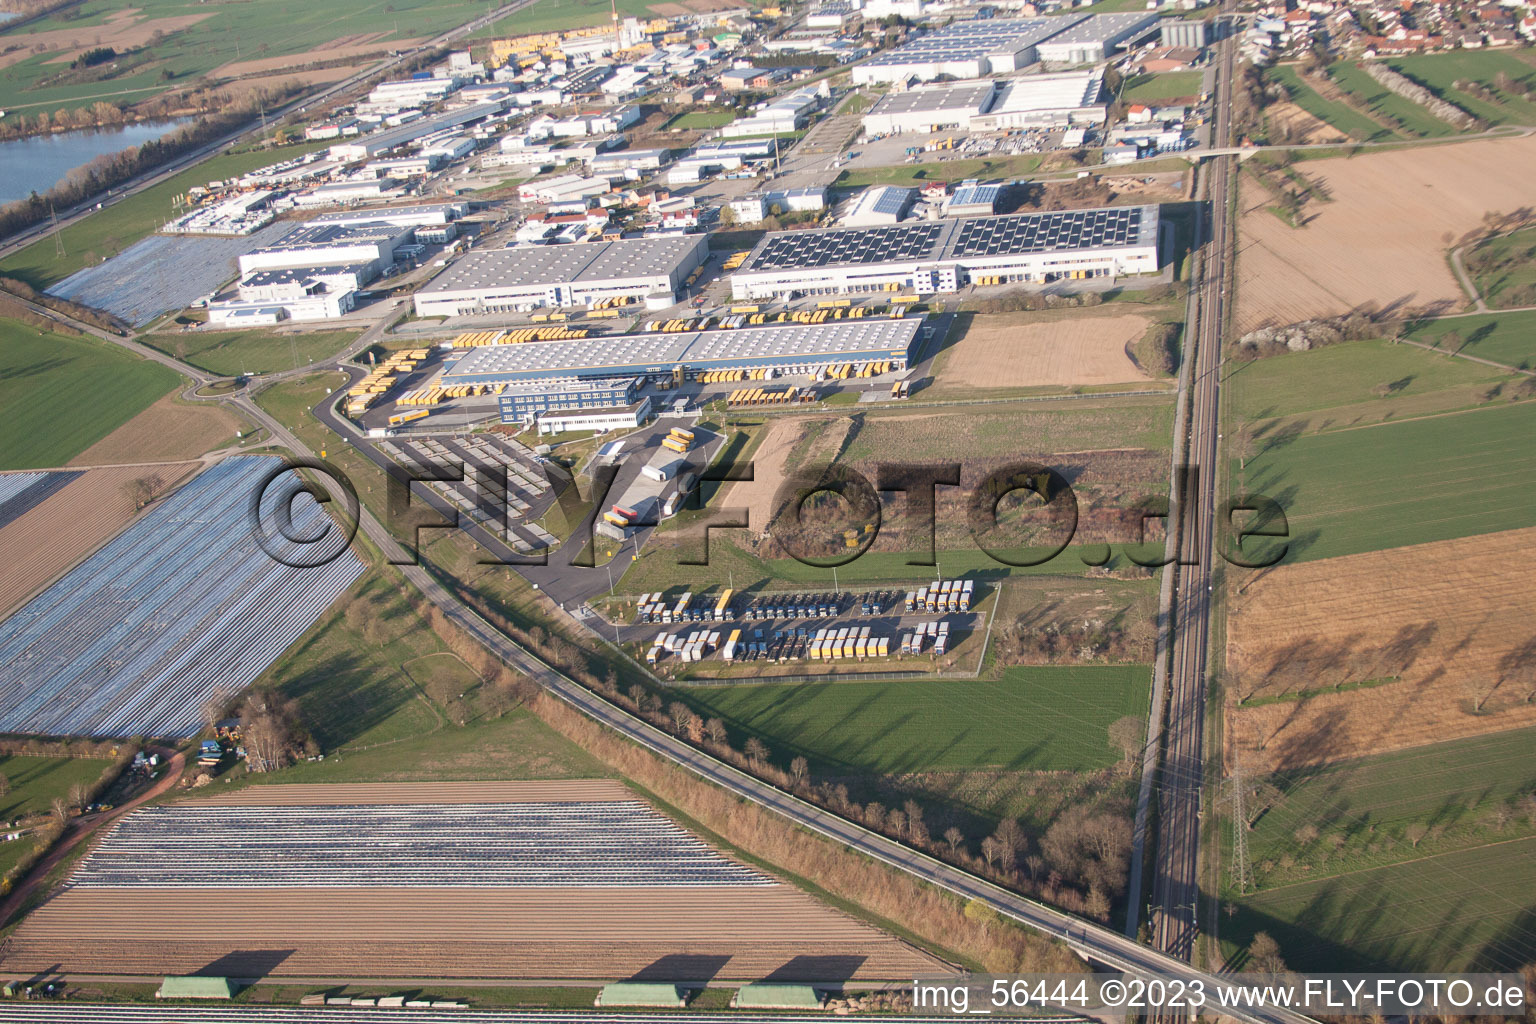 Luftbild von DACHSER Logistikzentrum Karlsruhe GmbH, Malsch im Bundesland Baden-Württemberg, Deutschland